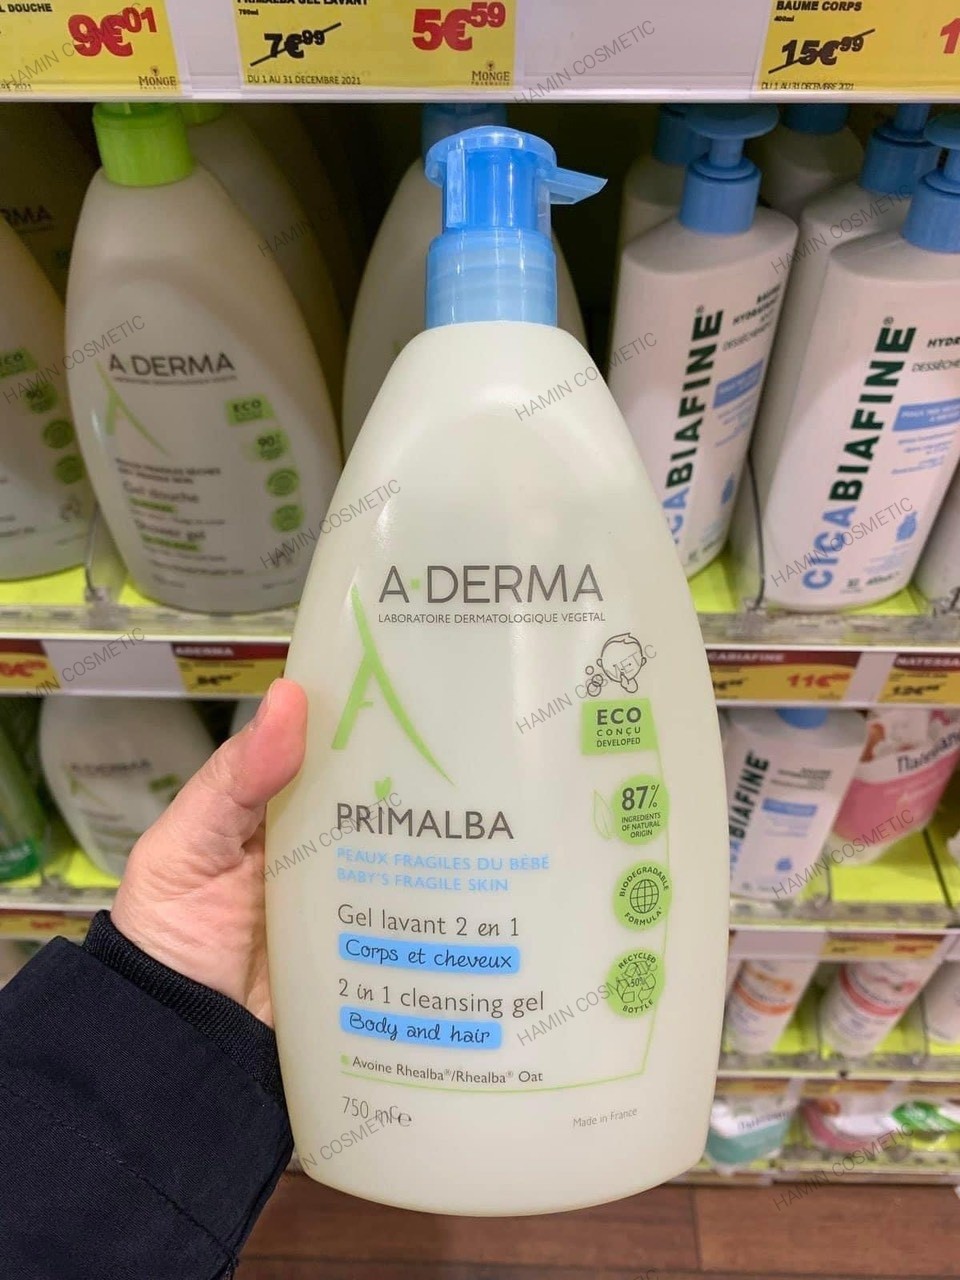 Sữa tắm gội A-derma primalba Gentle Cleansin 2 in 1 dạng gel giảm rôm sảy